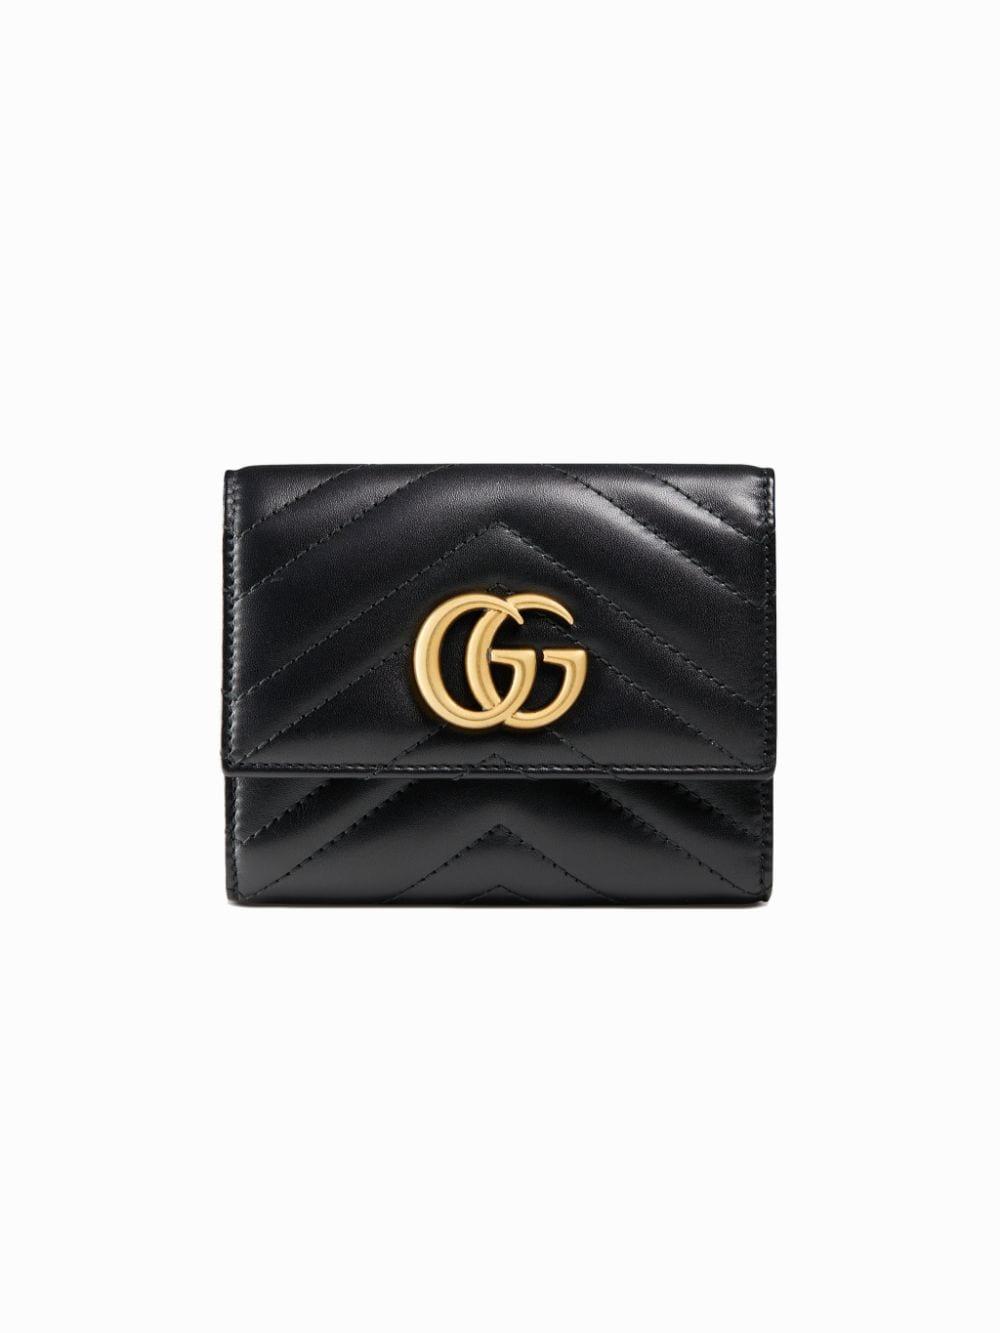 Gucci Leather GG Marmont Matelassé 